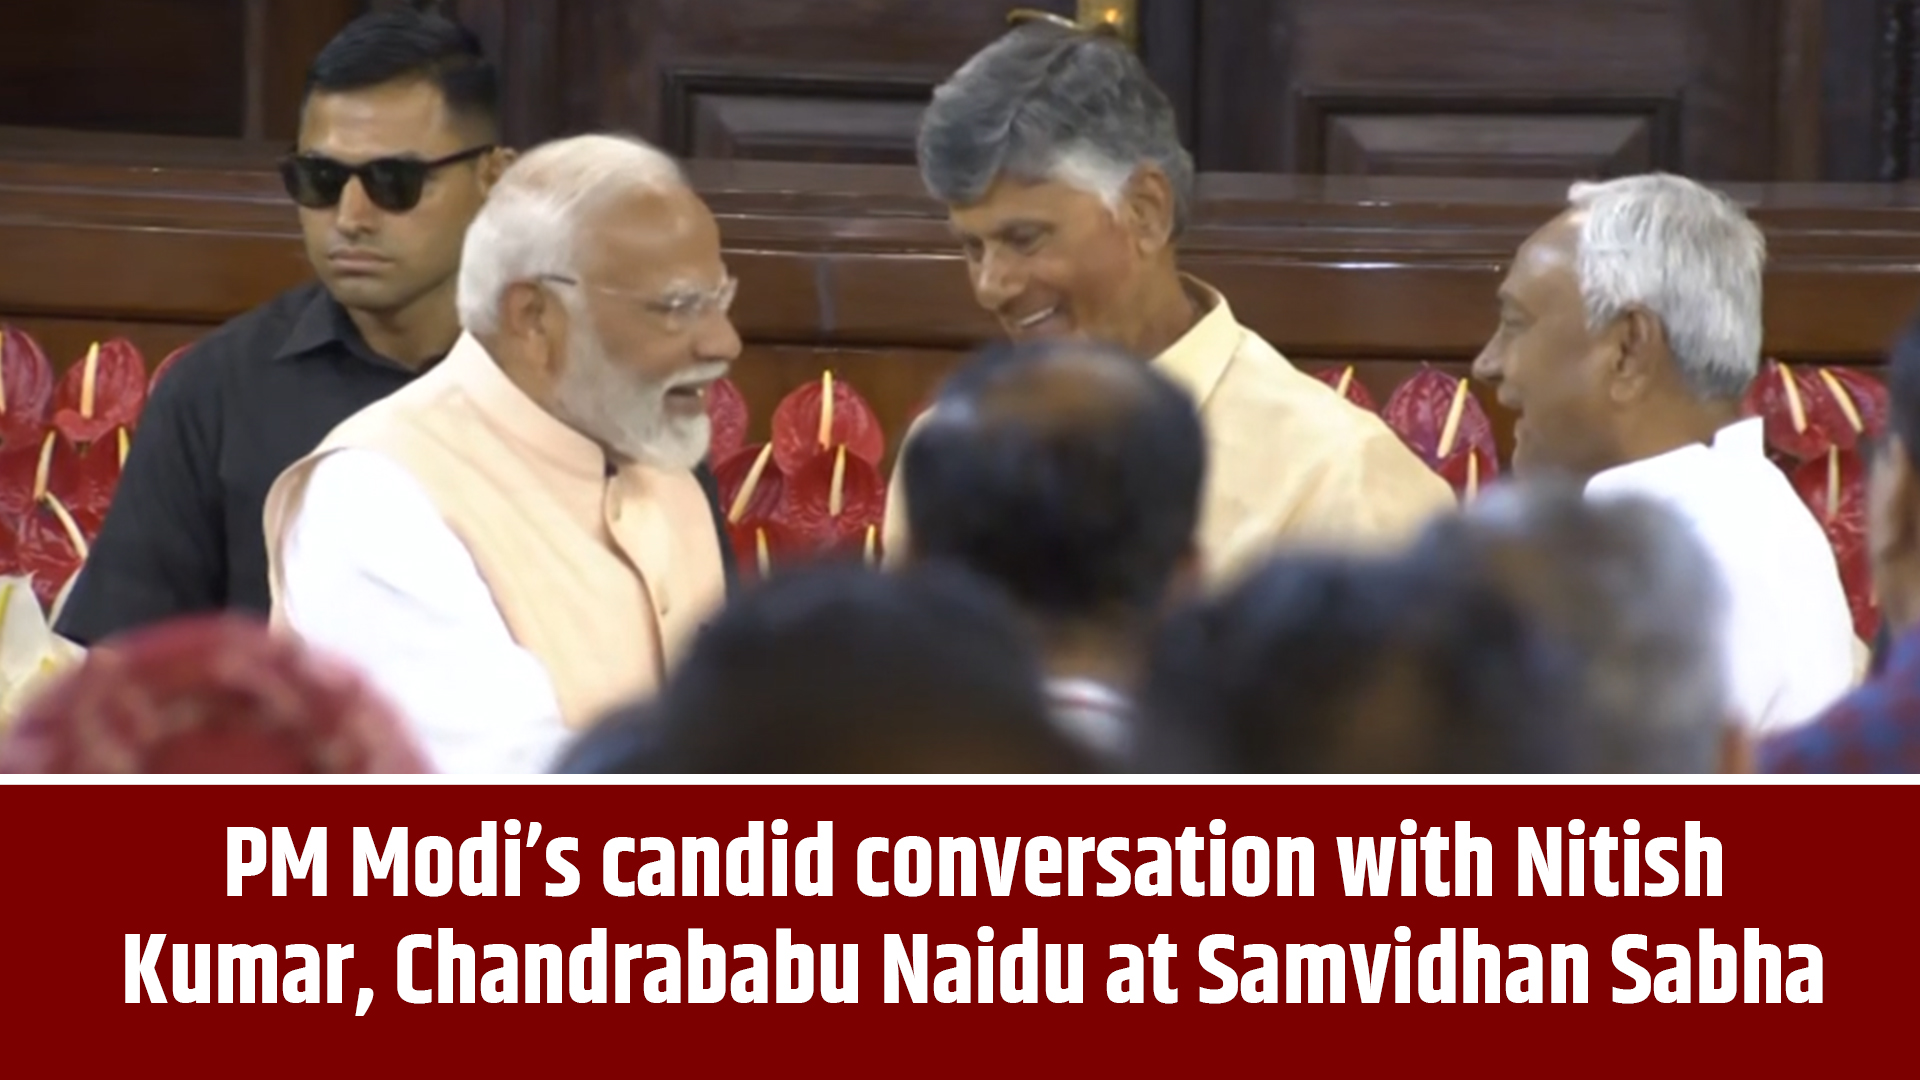 Prime Minister Narendra Modis candid conversation with Nitish Kumar, Chandrababu Naidu at Samvidhan Sabha